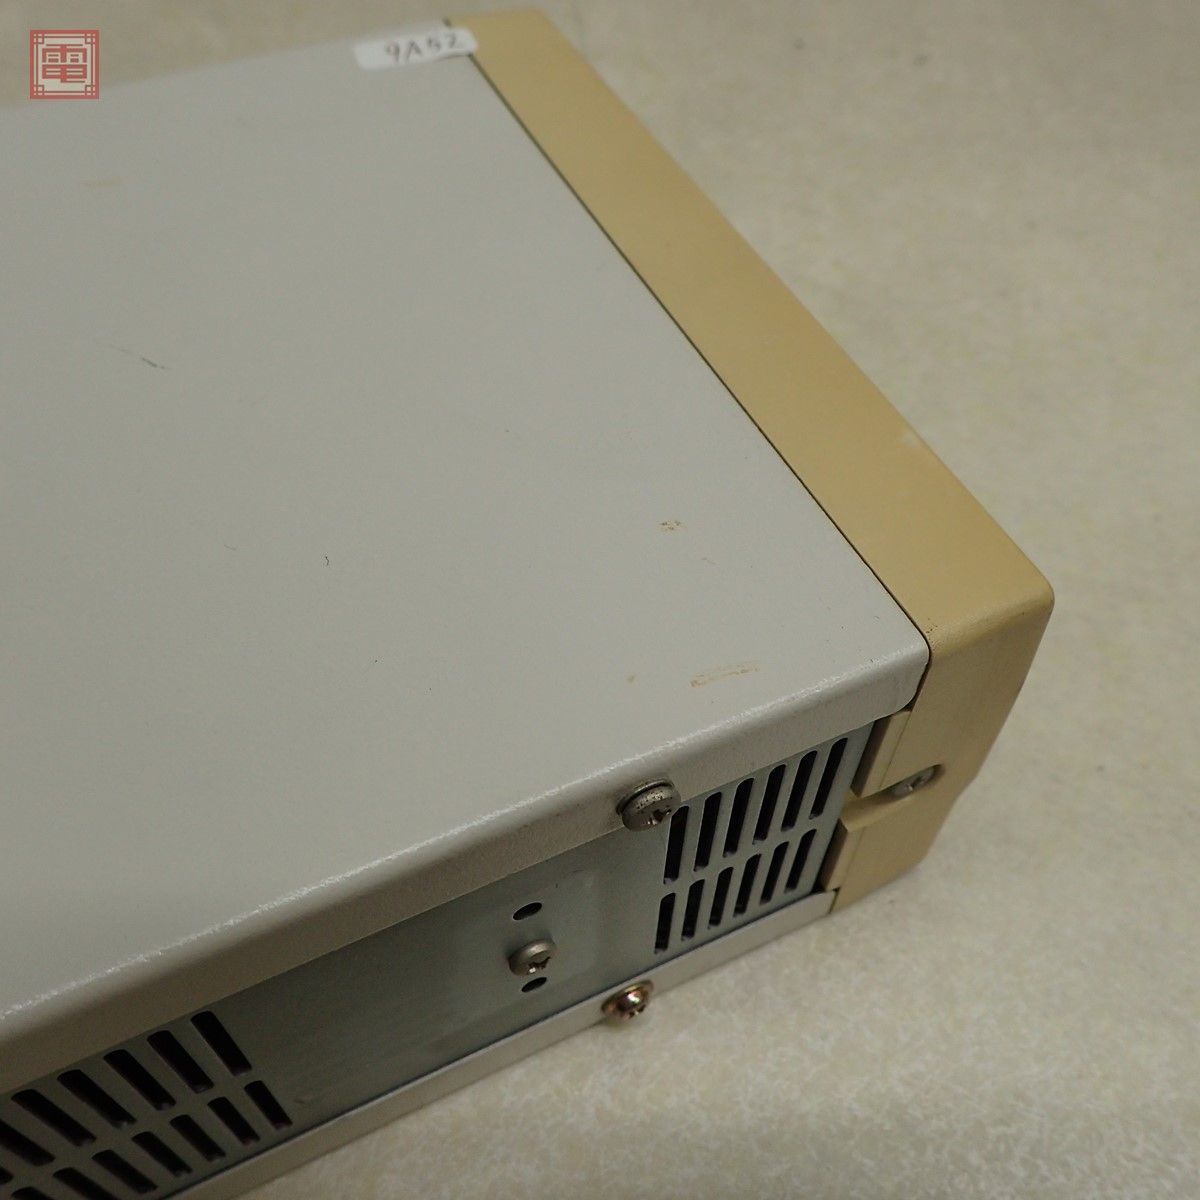 PC-9801 3.5インチフロッピーディスクユニット FD-33W 外付けFDD TEAC 通電のみ確認【20_画像7